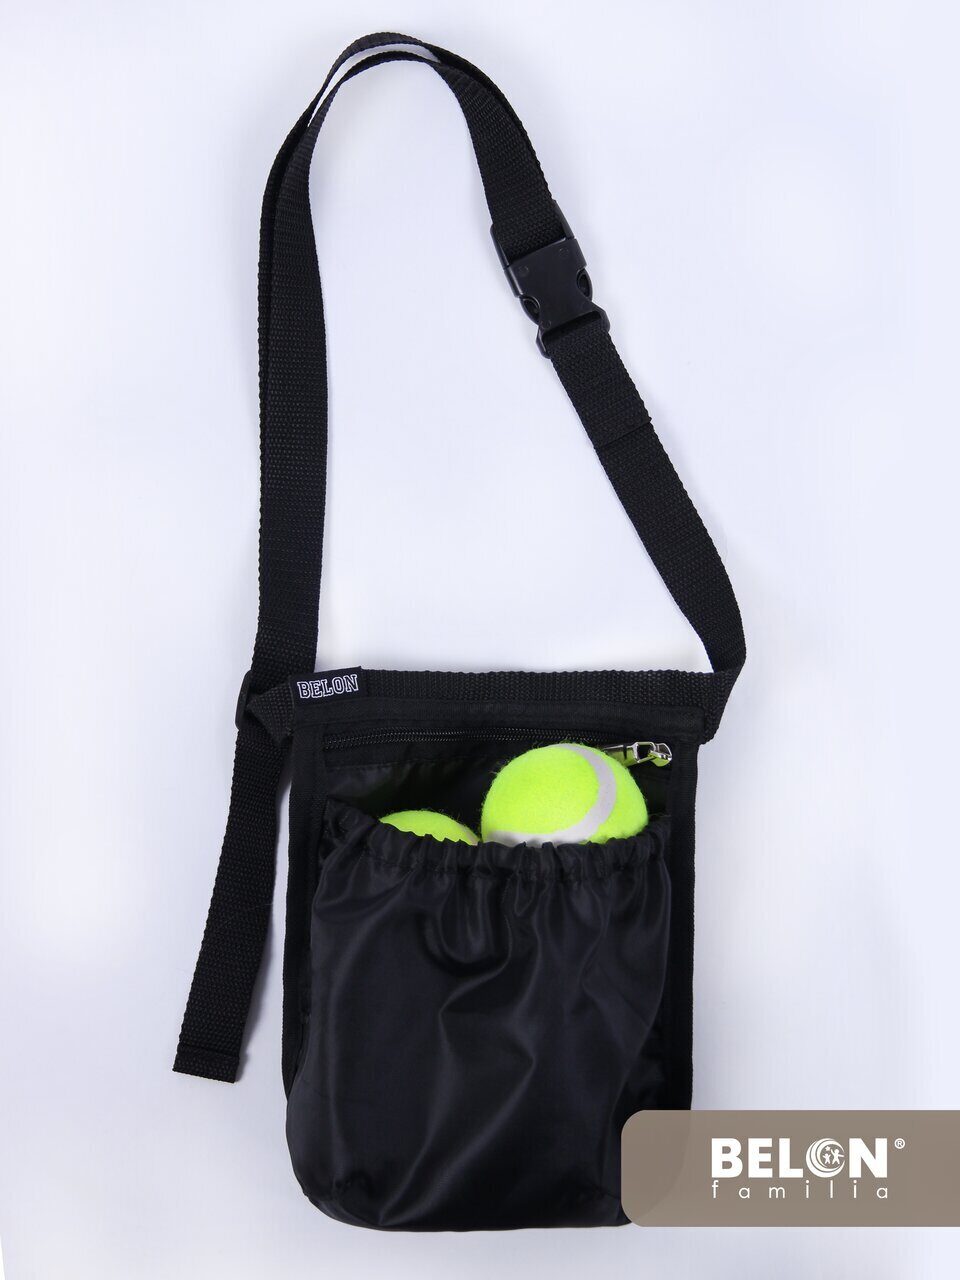 Поясная сумка для теннисных мячей Belon familia цвет черный